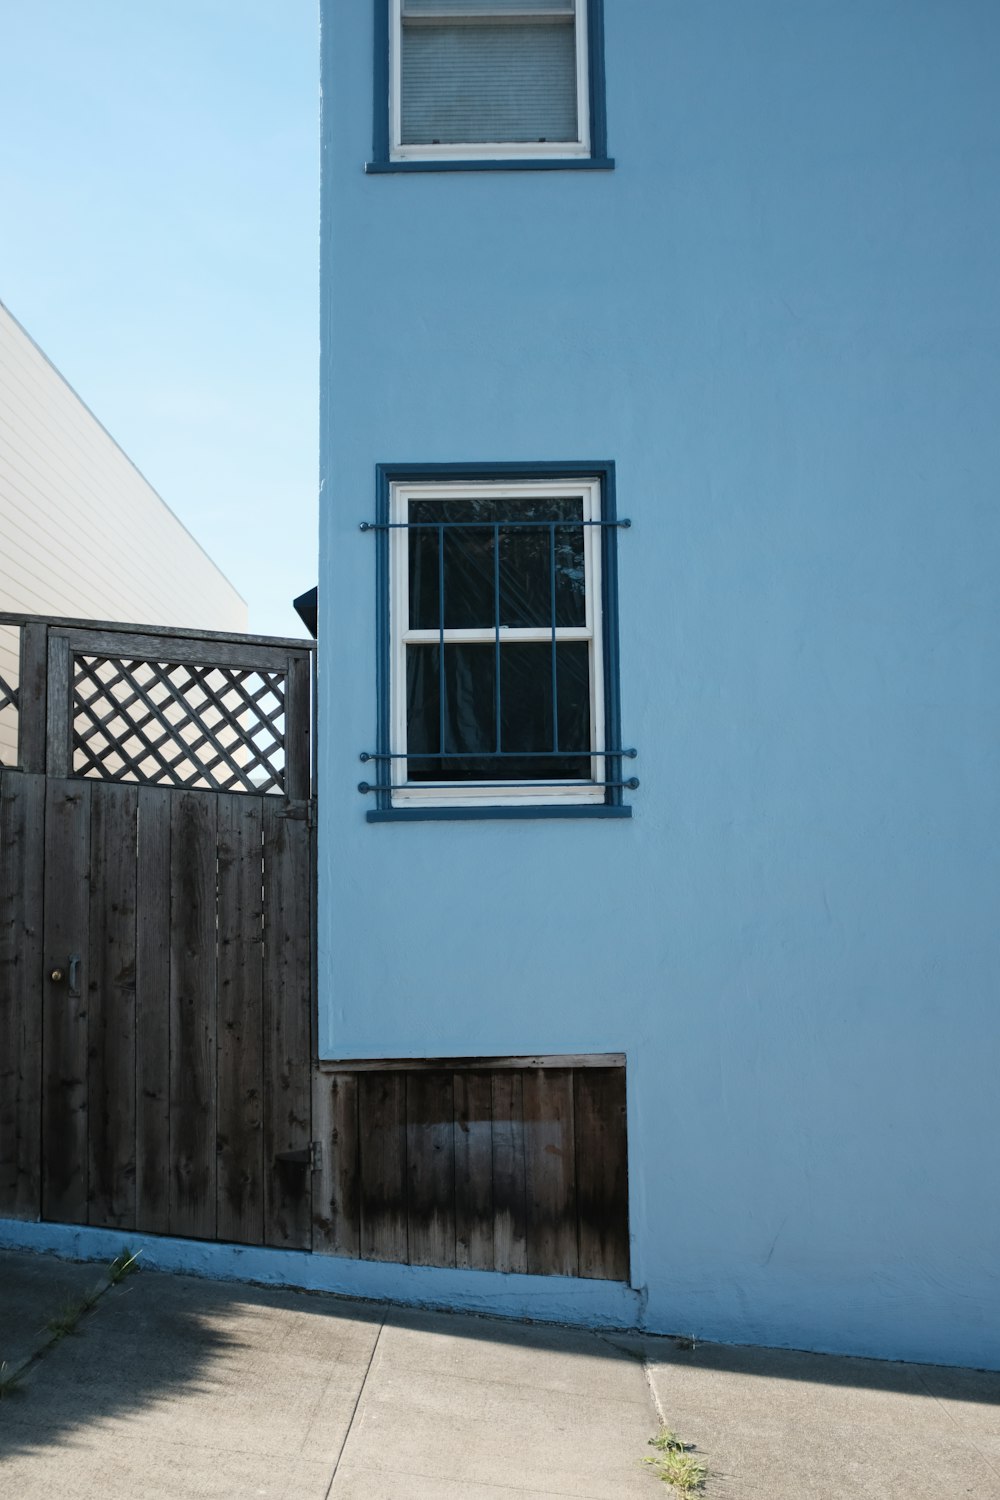 edifício pintado de azul com janela de vidro emoldurada branca